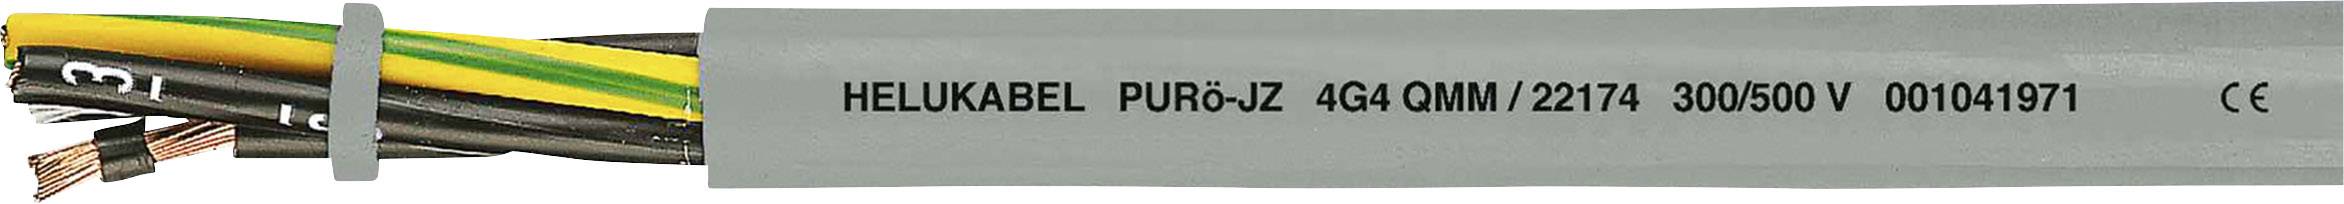 HELUKABEL PURö-JZ Steuerleitung 4 G 0.75 mm² Grau 22118-1000 1000 m